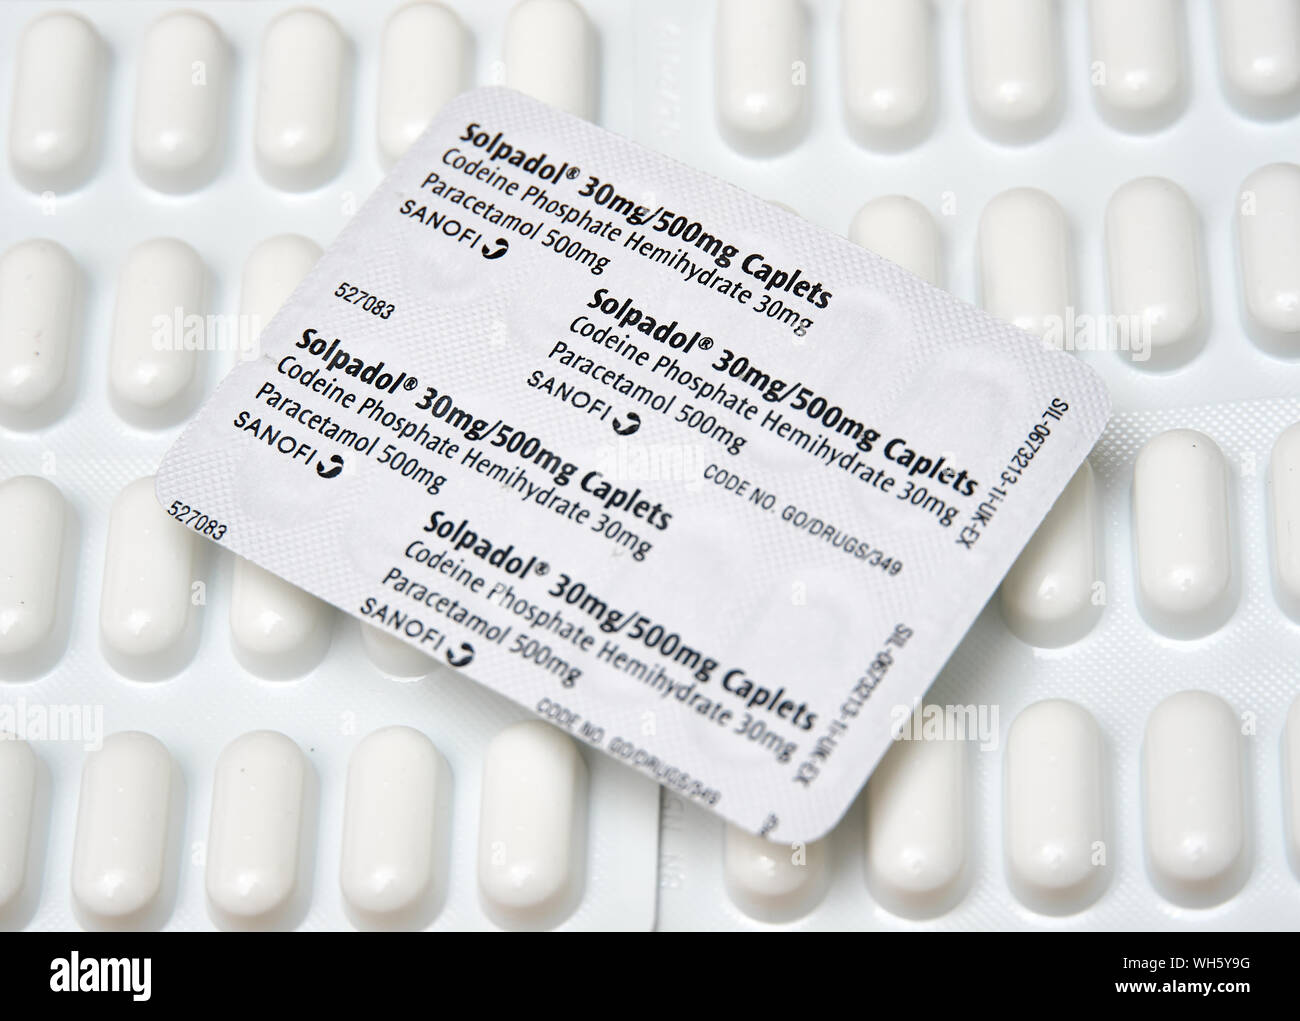 Solpadol contenente fosfato di codeina emiidrato e il paracetamolo è un forte dolore killer venduti nel Regno Unito. Foto Stock